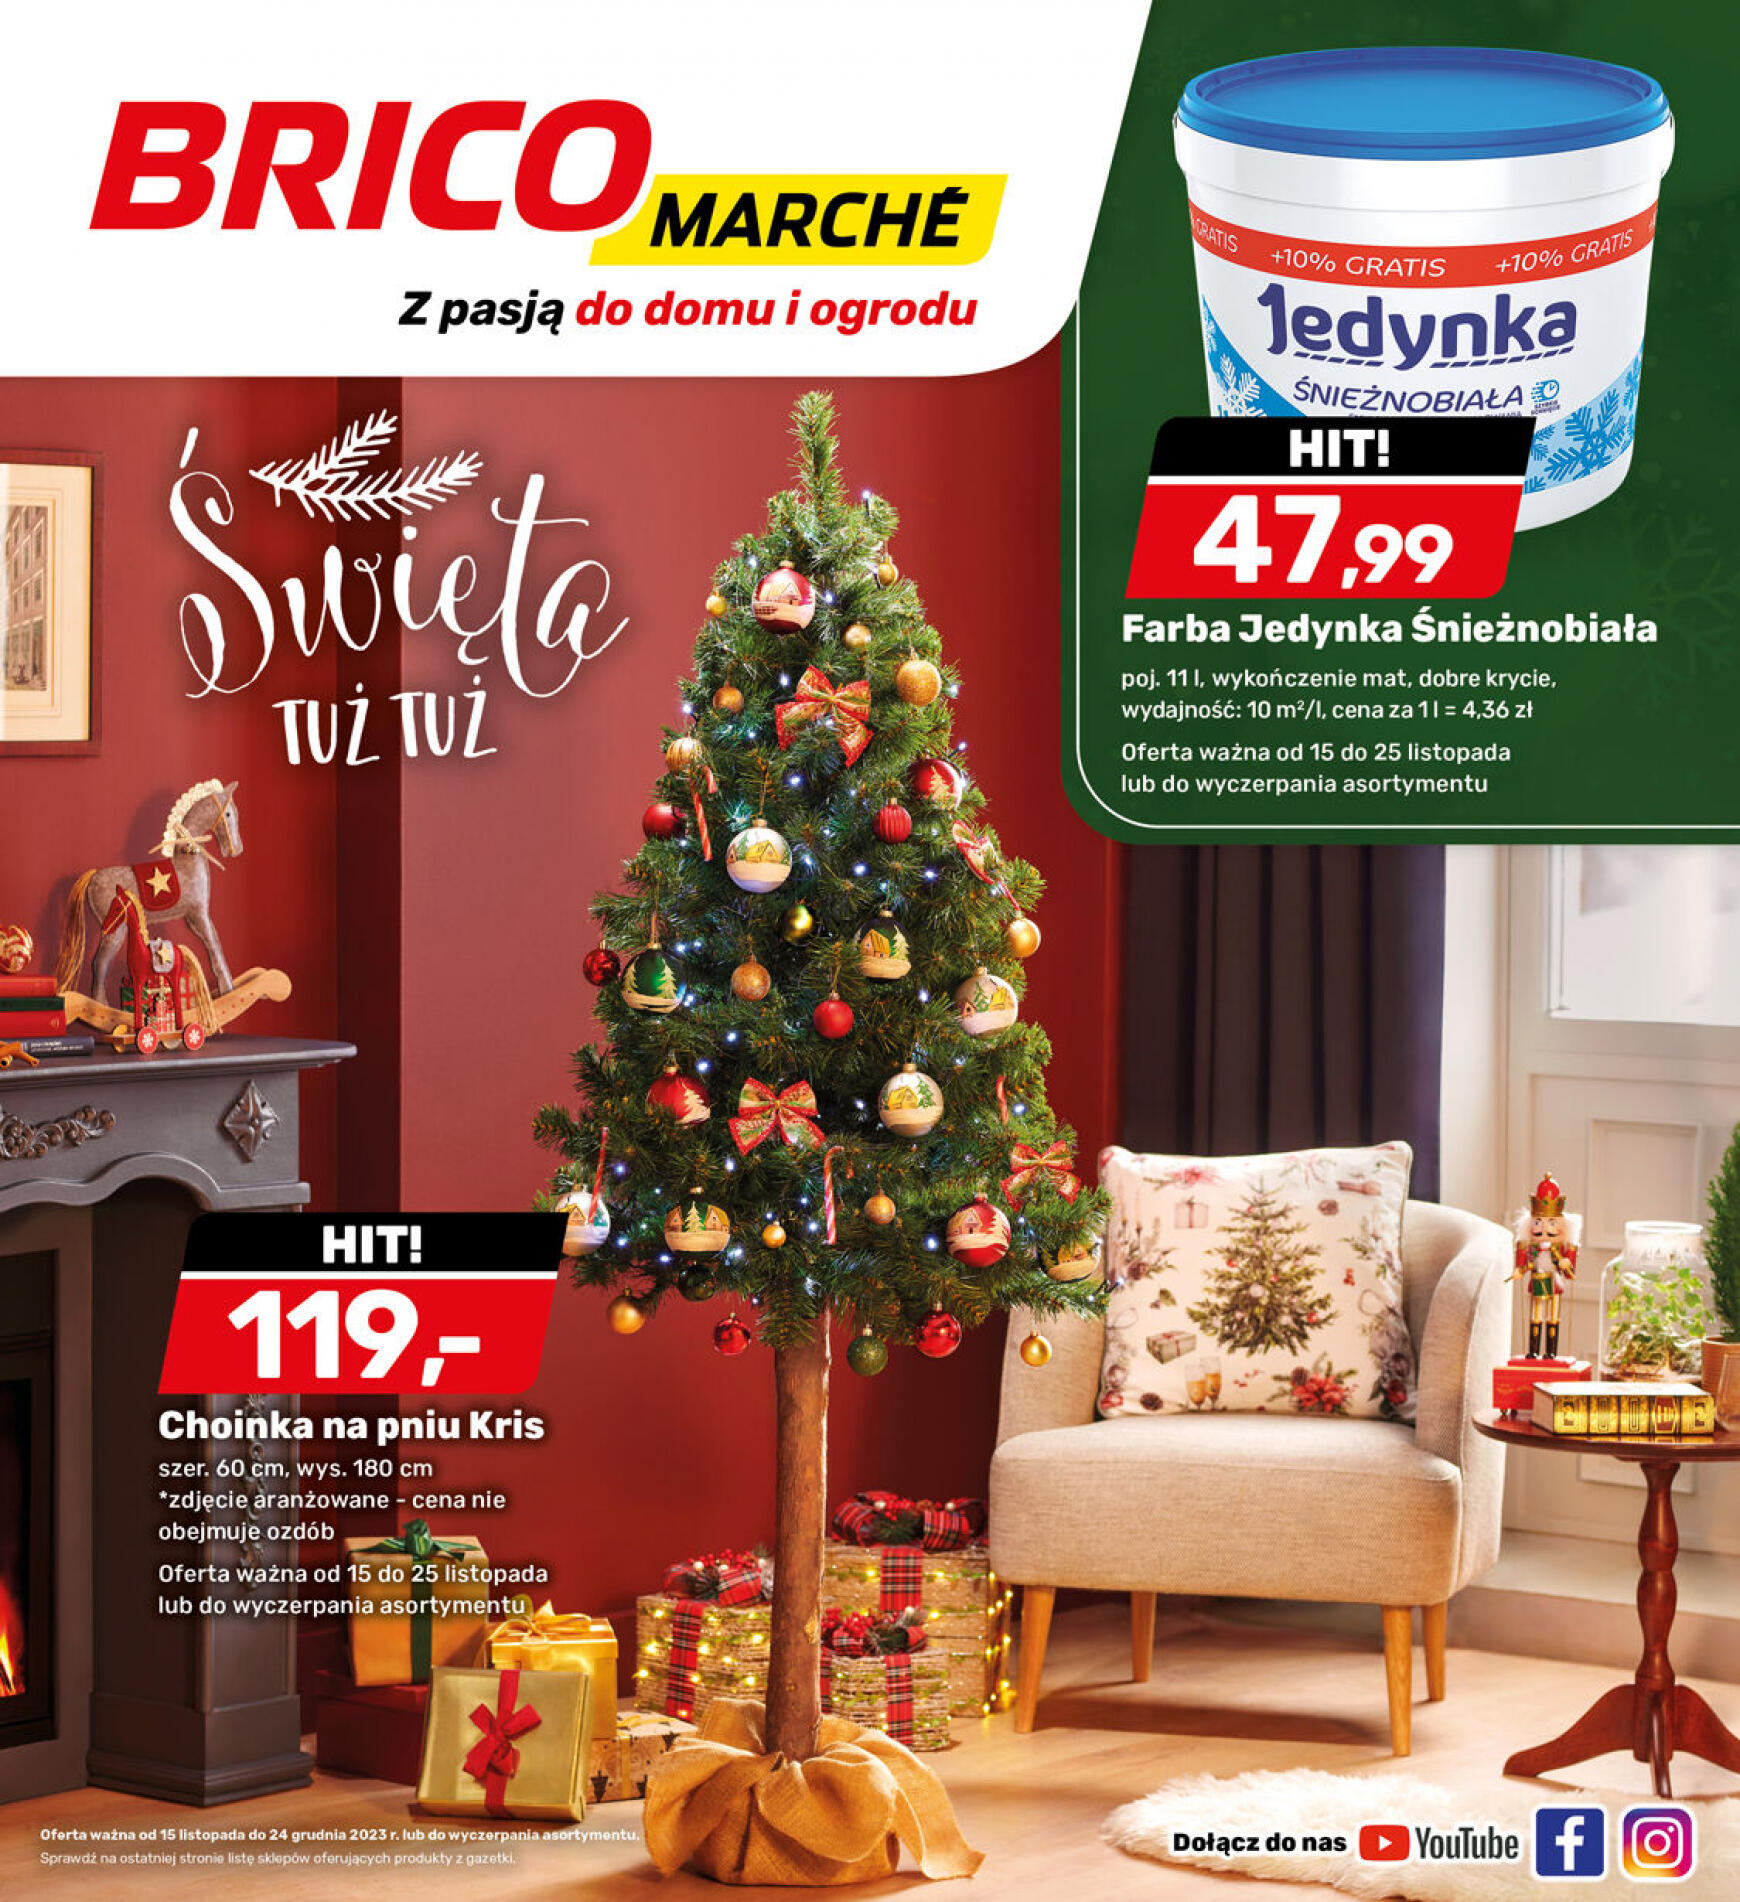 brico-marche - - Bricomarche - page: 3